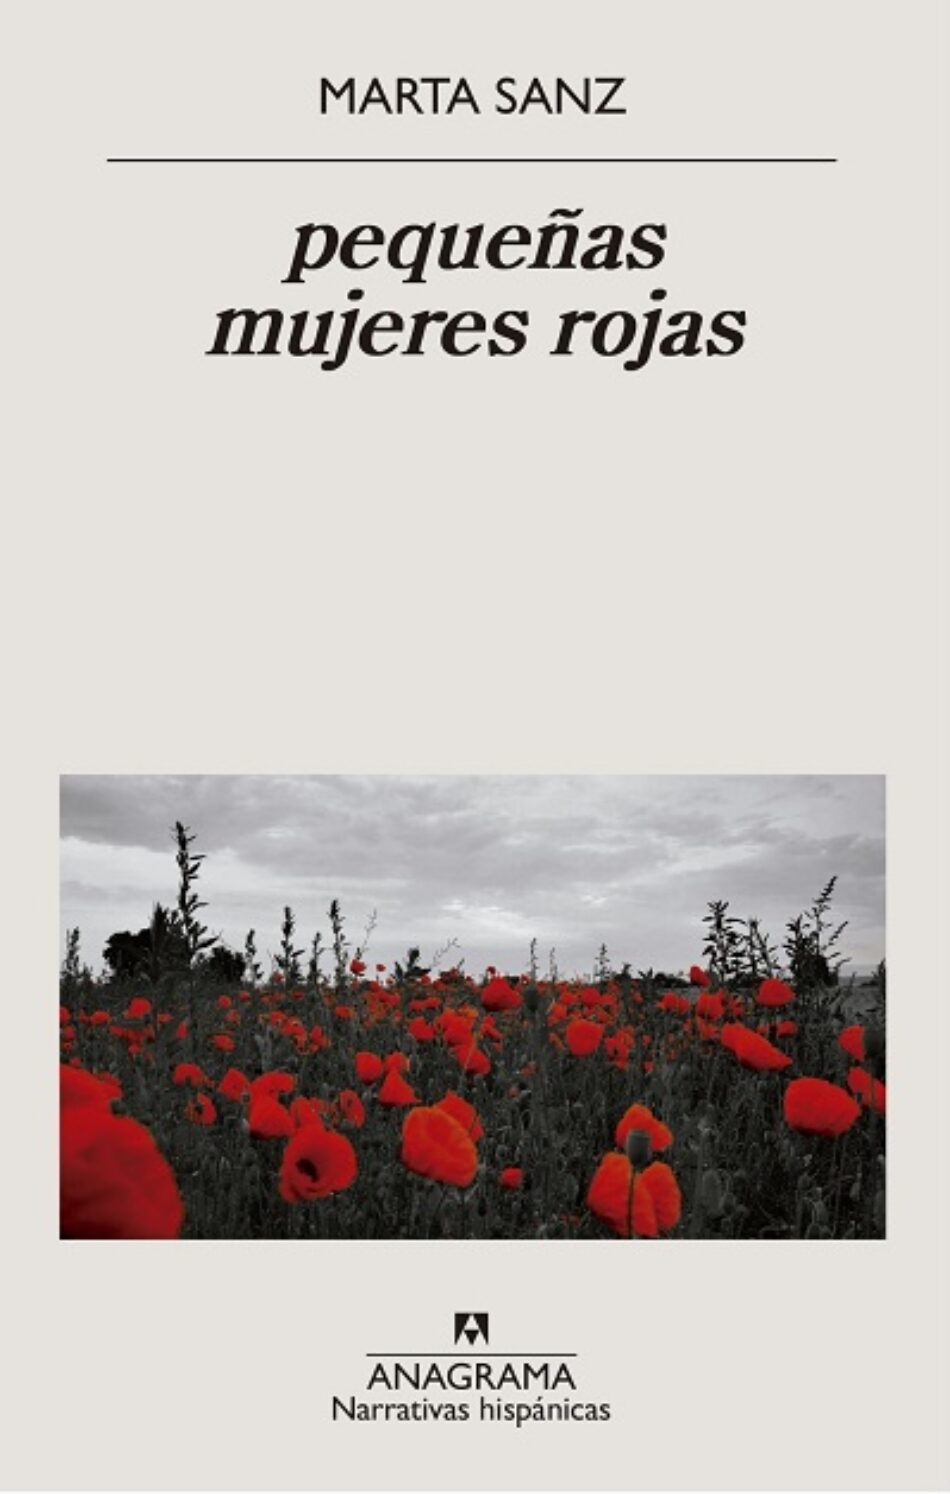 “Pequeñas mujeres rojas”, Marta Sanz. El país de los horrores